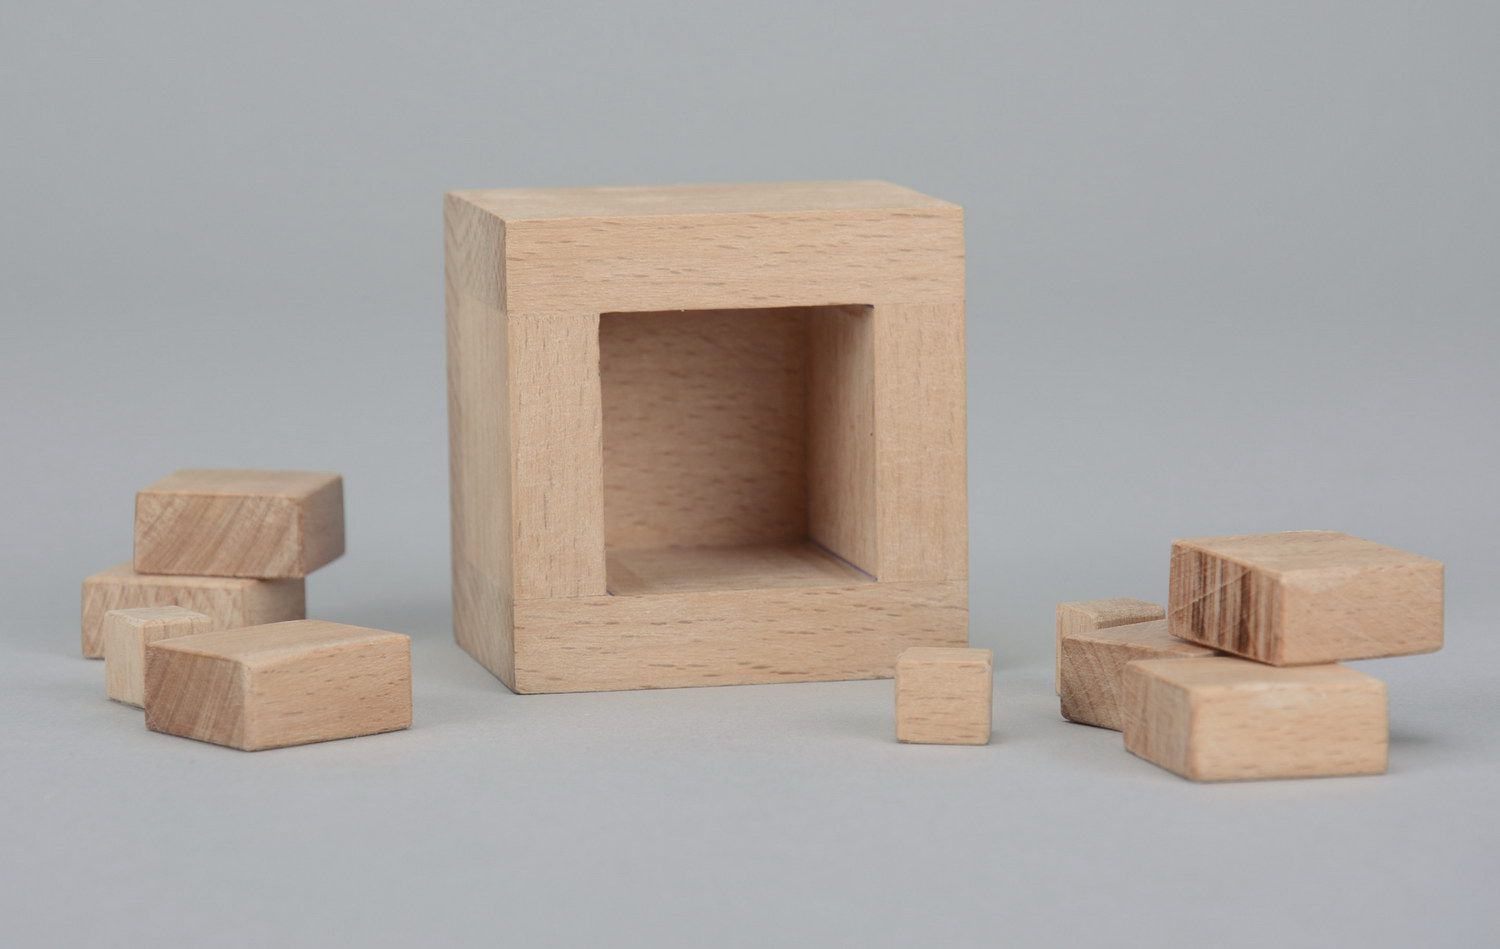 Rompicapo in legno di Singmaster fatto a mano giocattolo di legno idea regalo foto 4